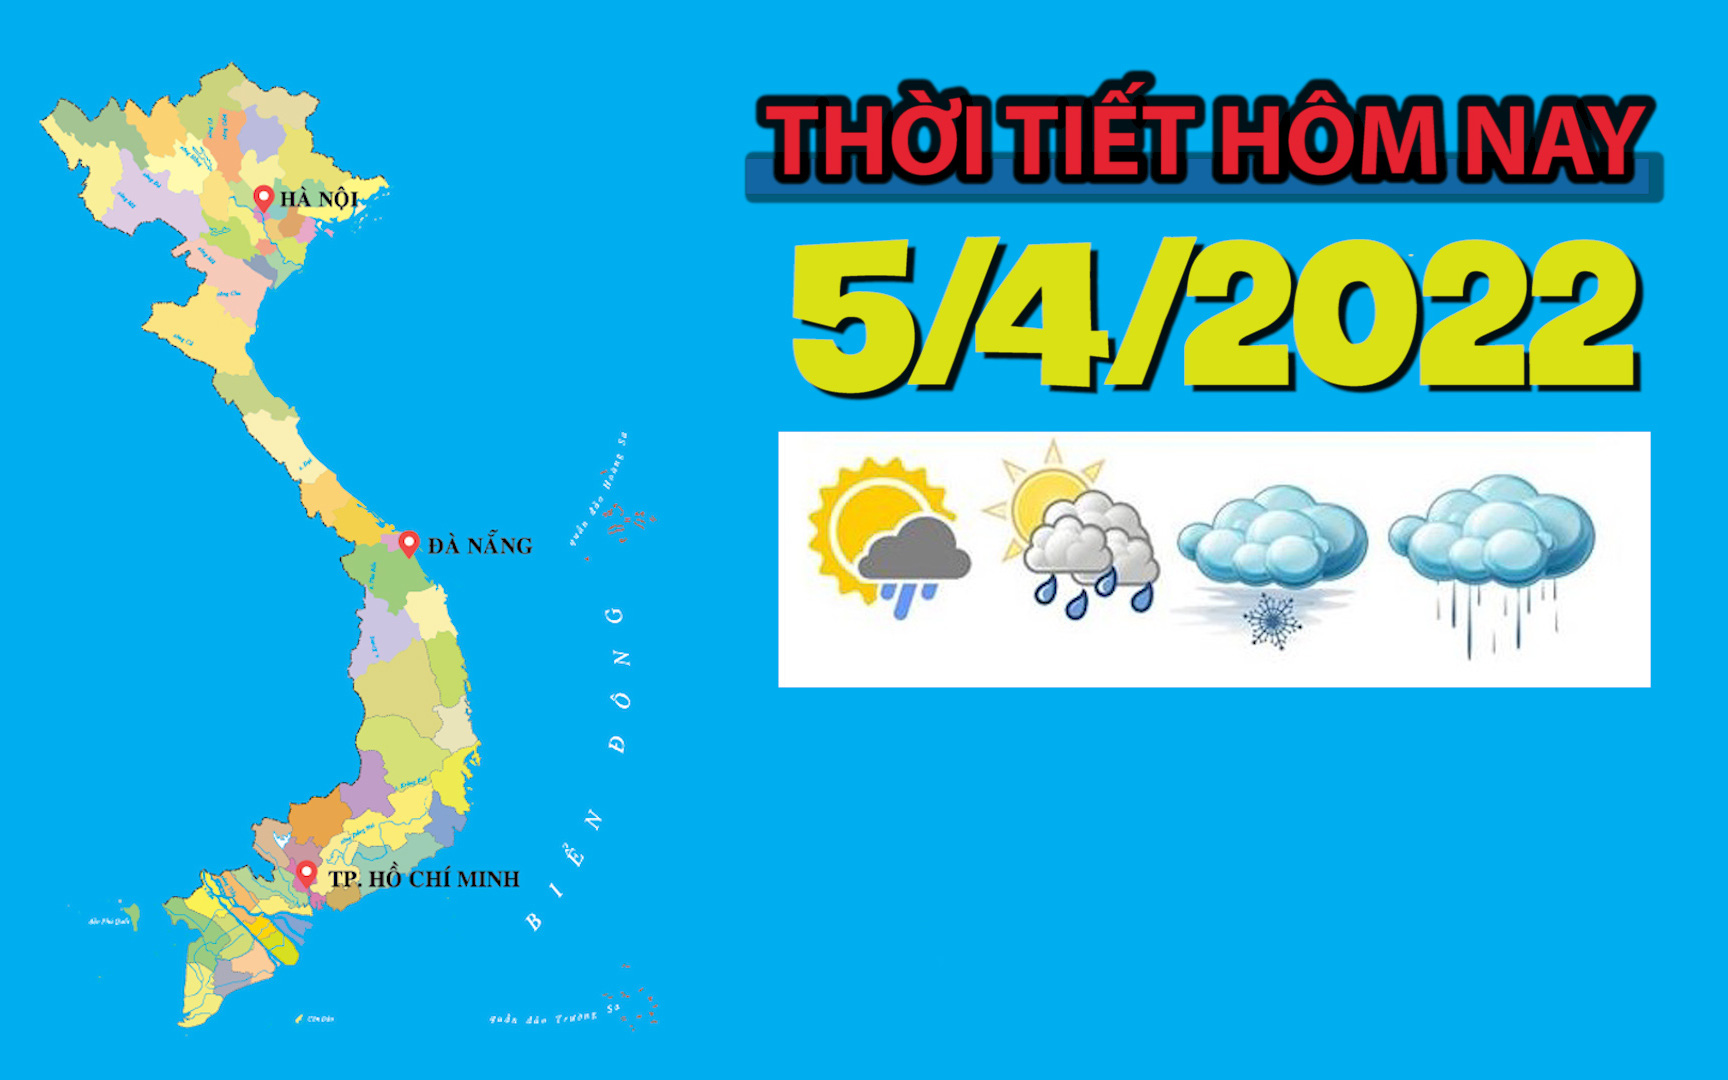 Thời tiết hôm nay 5/4/2022: Khu vực Trung Bộ, Tây Nguyên và Nam Bộ mưa vừa, mưa to